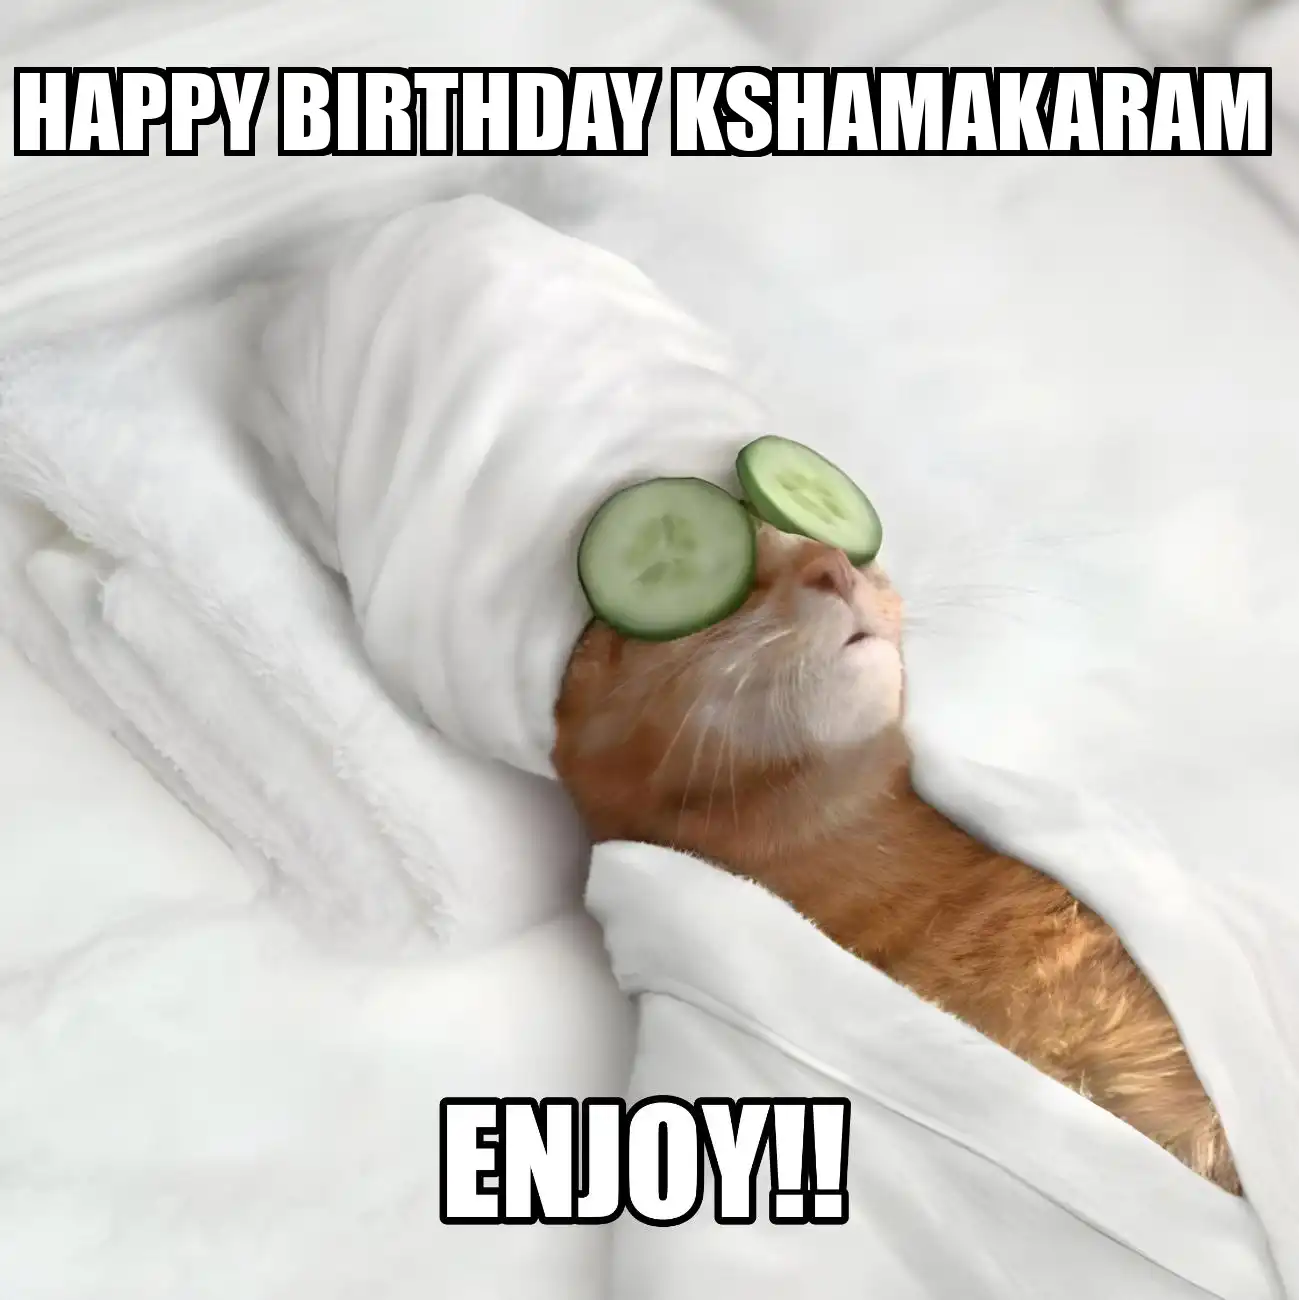 Happy Birthday Kshamakaram Enjoy Cat Meme